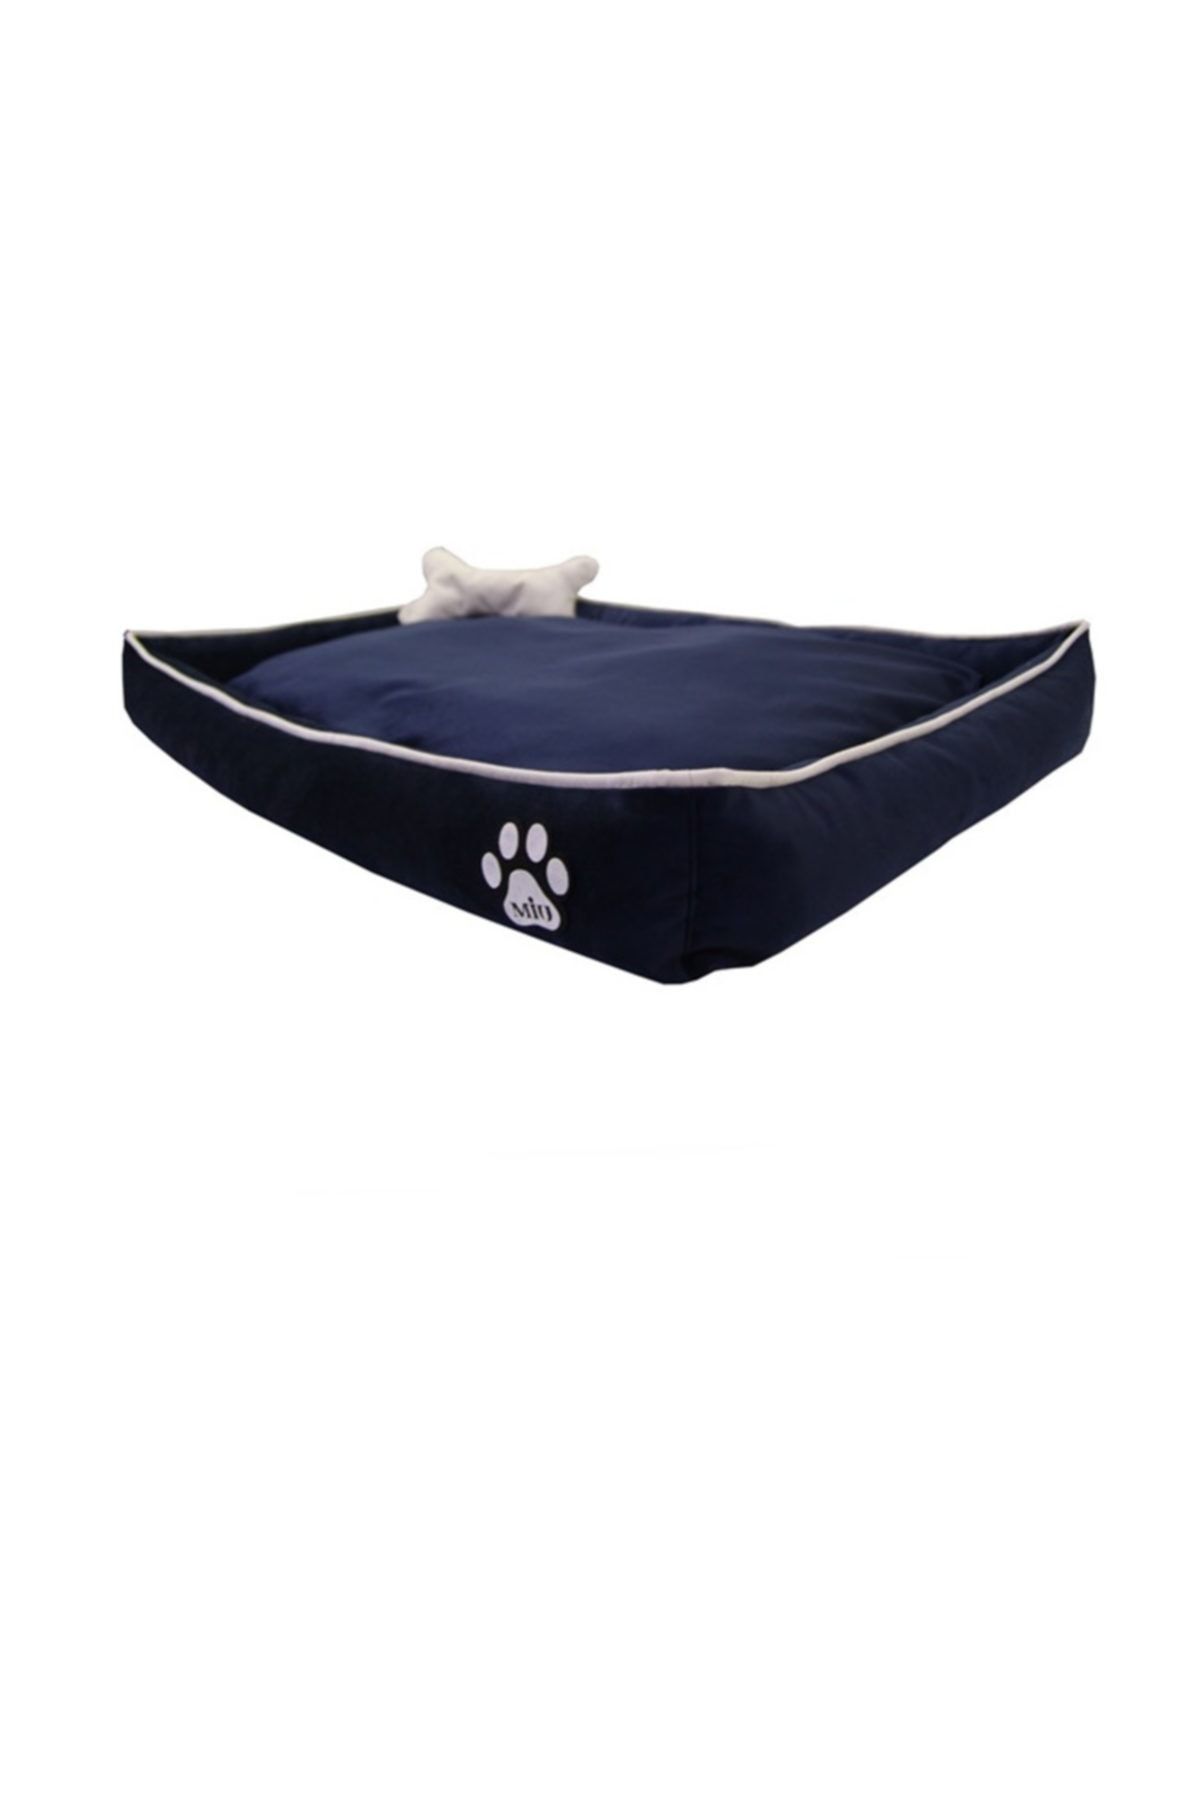 Miu Miu Miu Tay Tüyü Köpek Yatağı Kemik Yastıklı 14*70*100 Cm Lacivert Large